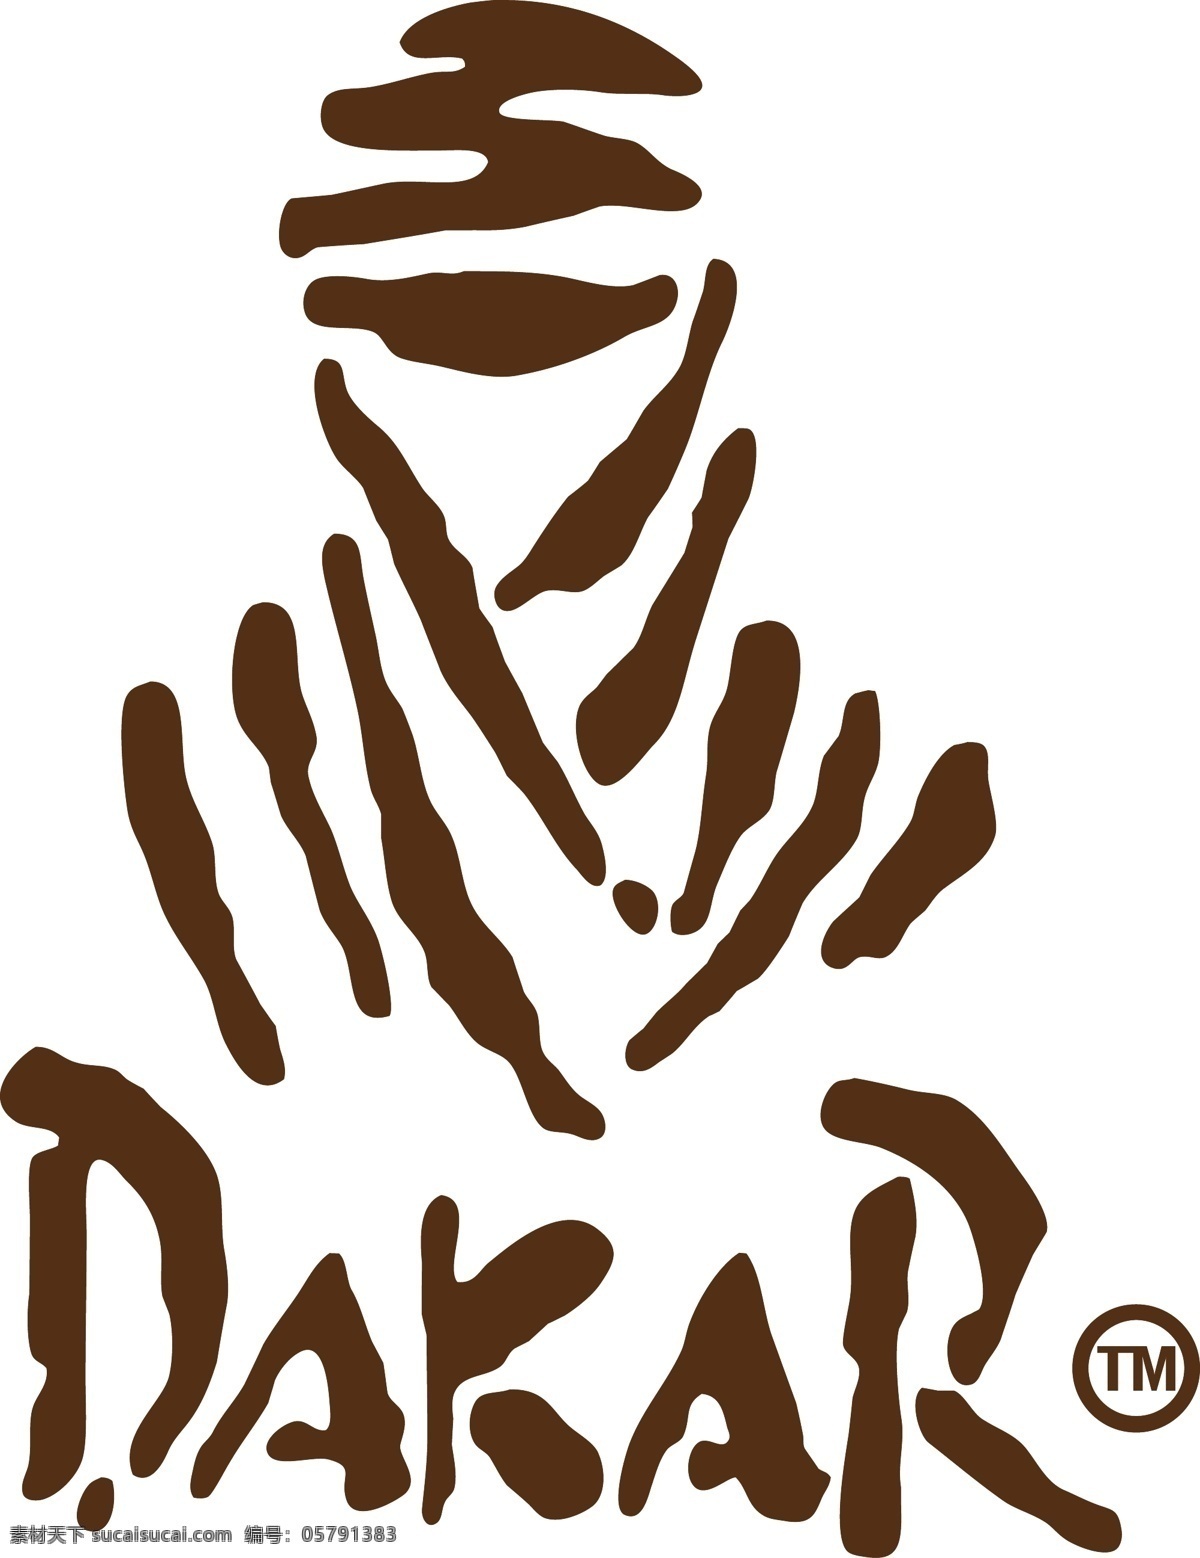 达喀尔拉力赛 拉力赛 dakar 越野赛 赛车 企业 logo 标志 标识标志图标 矢量